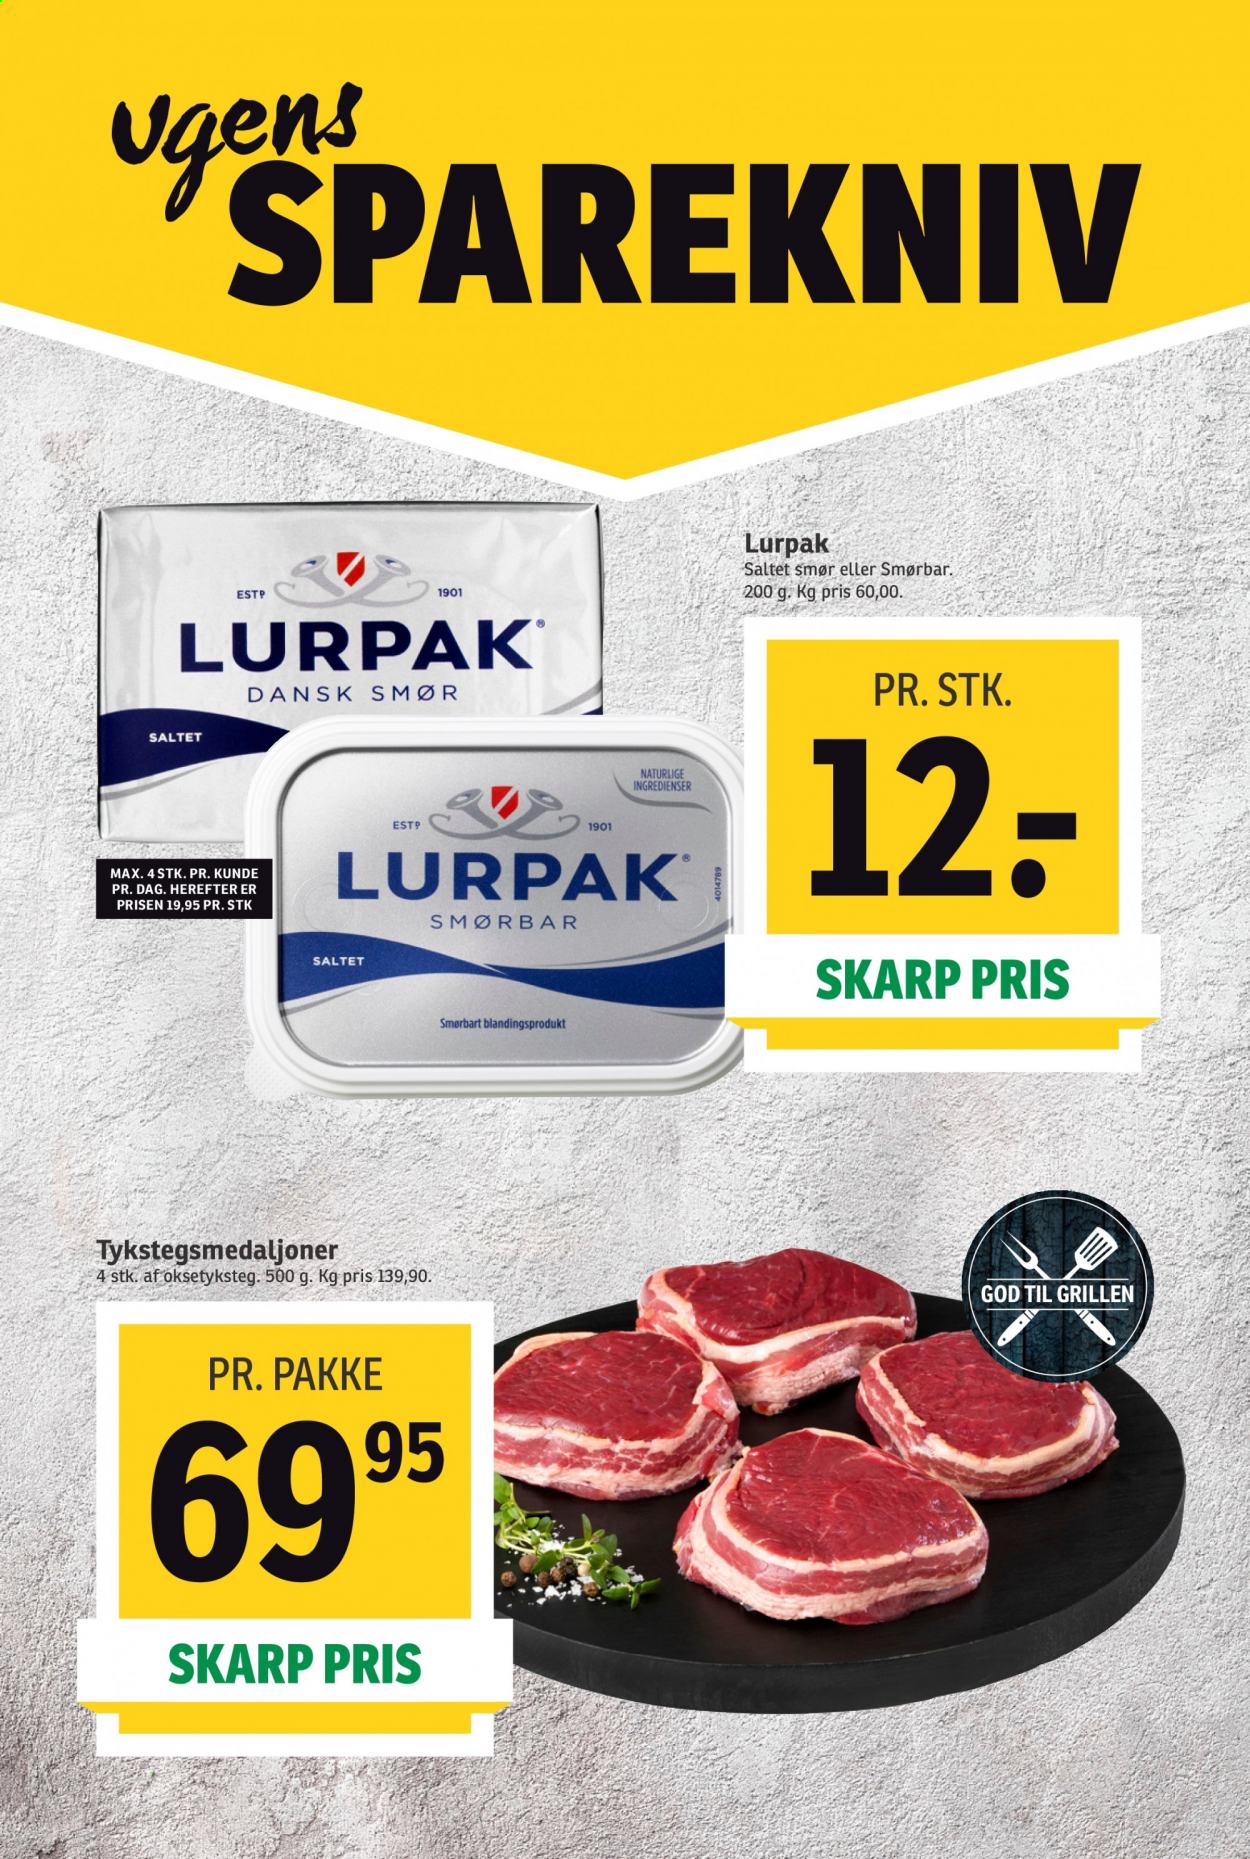 thumbnail - SPAR tilbud  - 7.8.2021 - 13.8.2021 - tilbudsprodukter - smør, Lurpak, smørbar. Side 3.